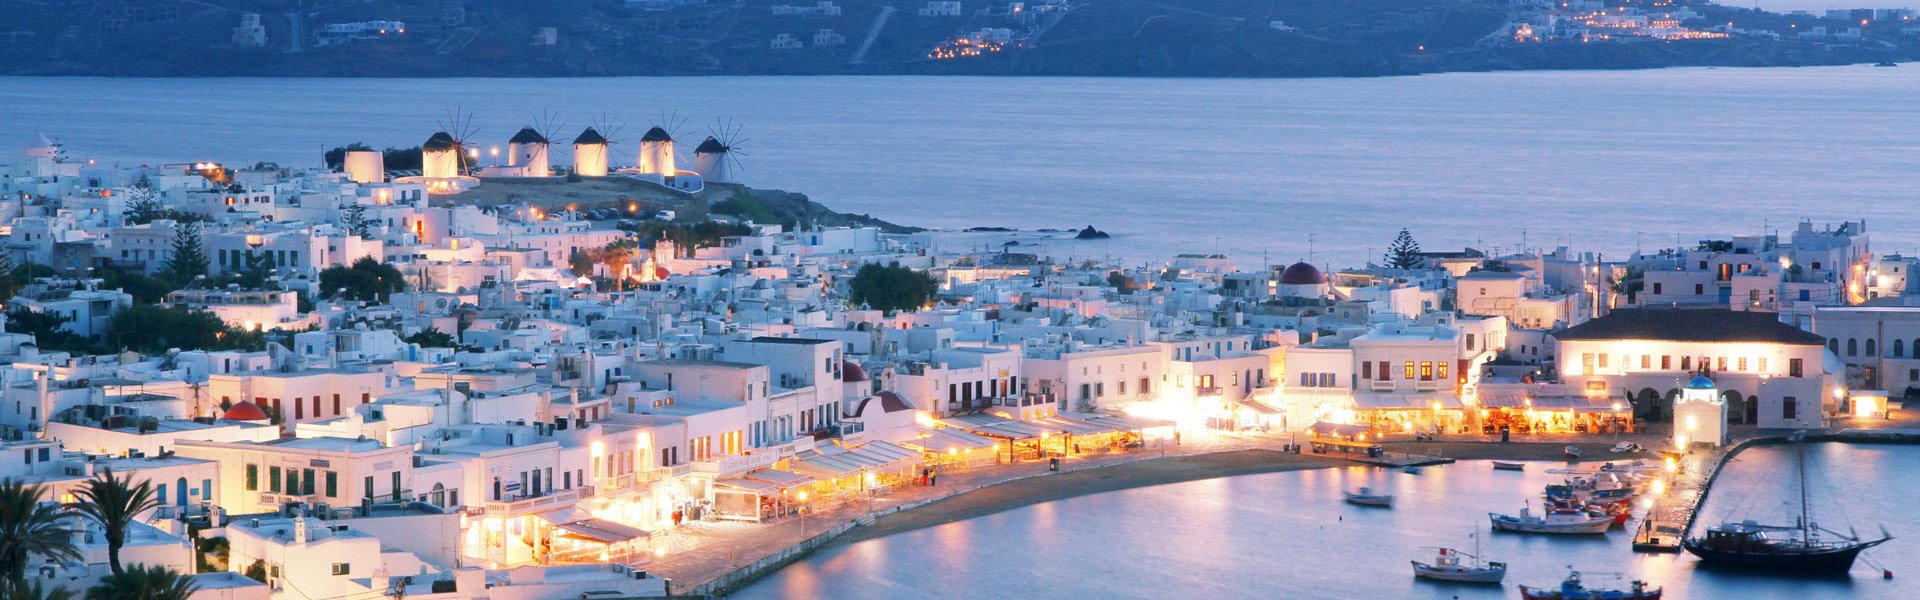 Grand Estate - Greece